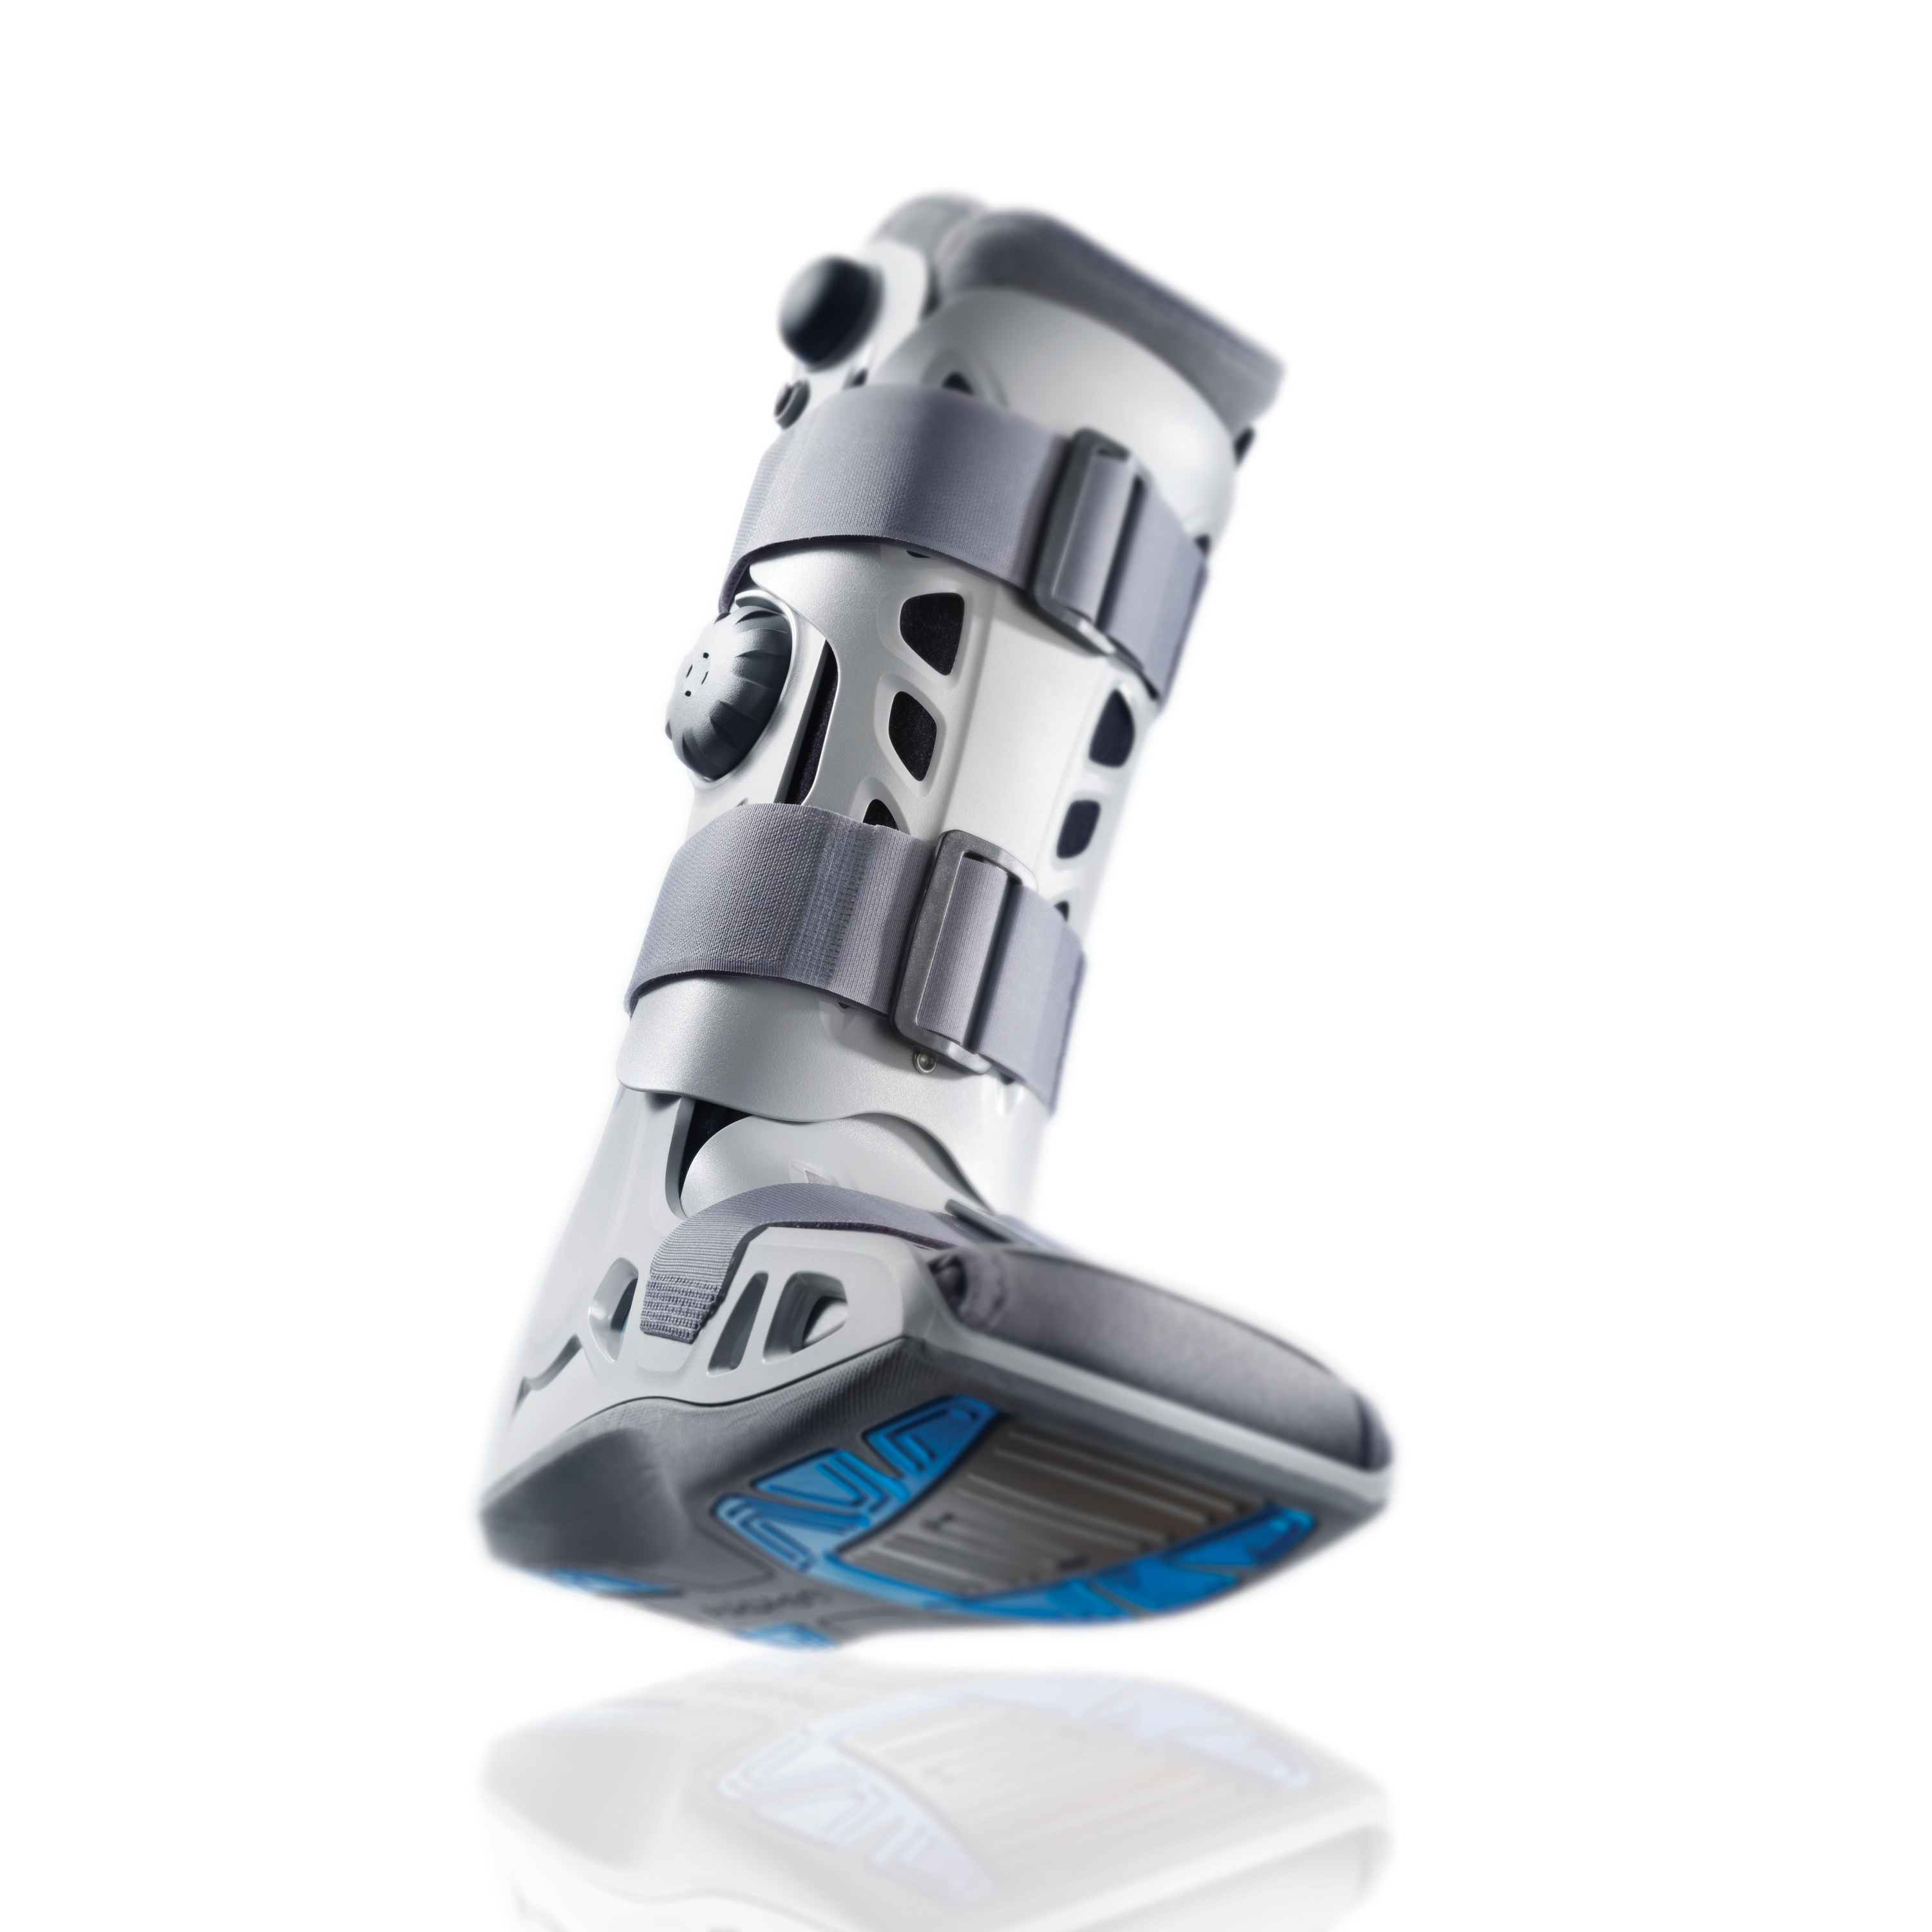 Zusatzbild AIRCAST® Airselect™ Elite Walker, mit Spiegelung, Unterschenkel-Fuß-Orthese zur Immobilisierung in vorgegebener Position